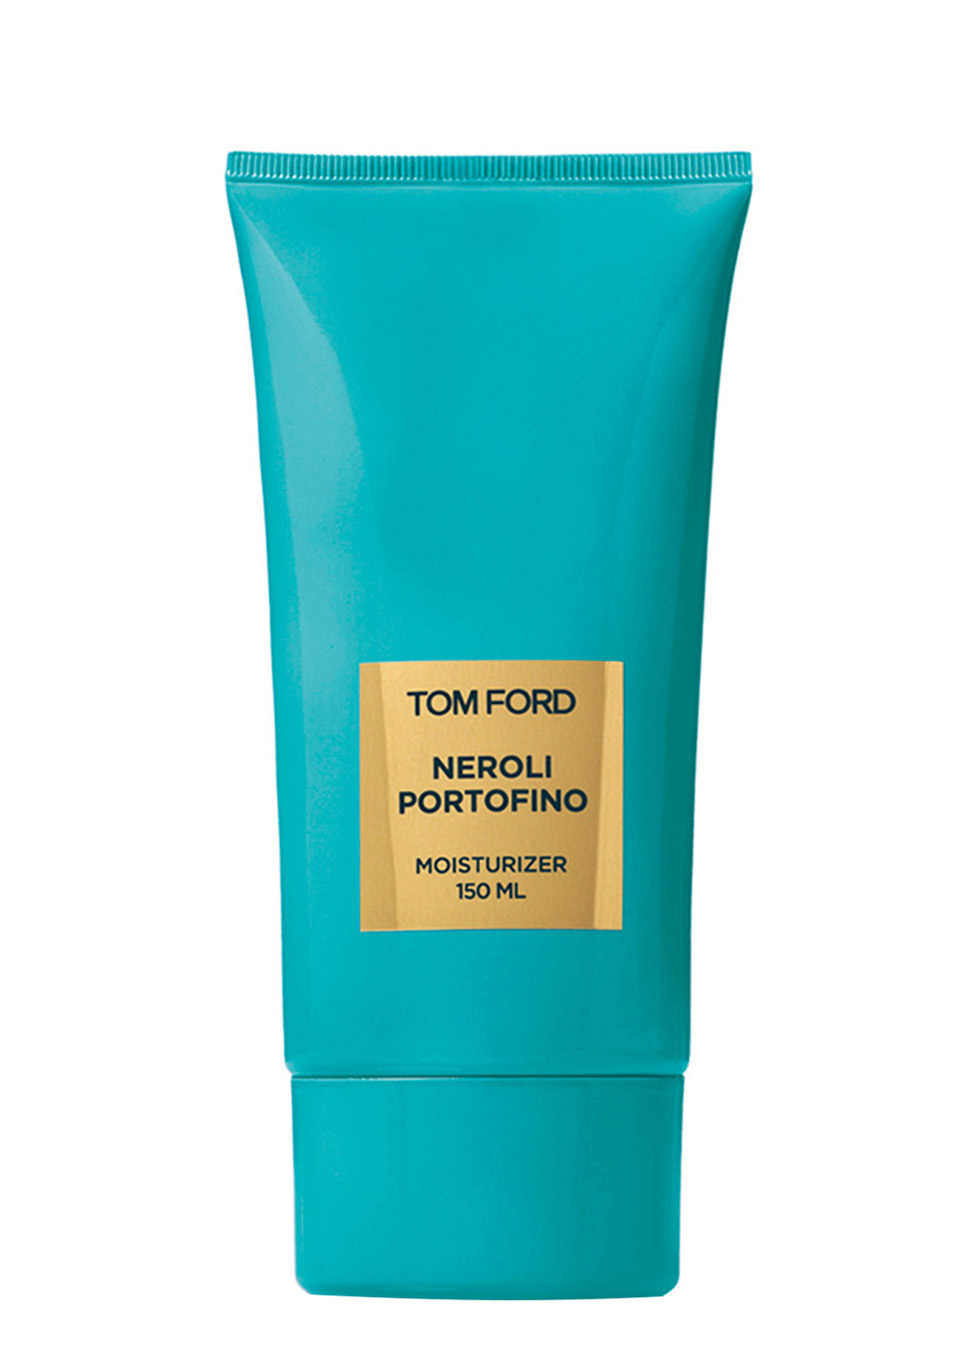 Tom Ford Neroli Portofino Body Lotion 150ml - Harvey Nichols